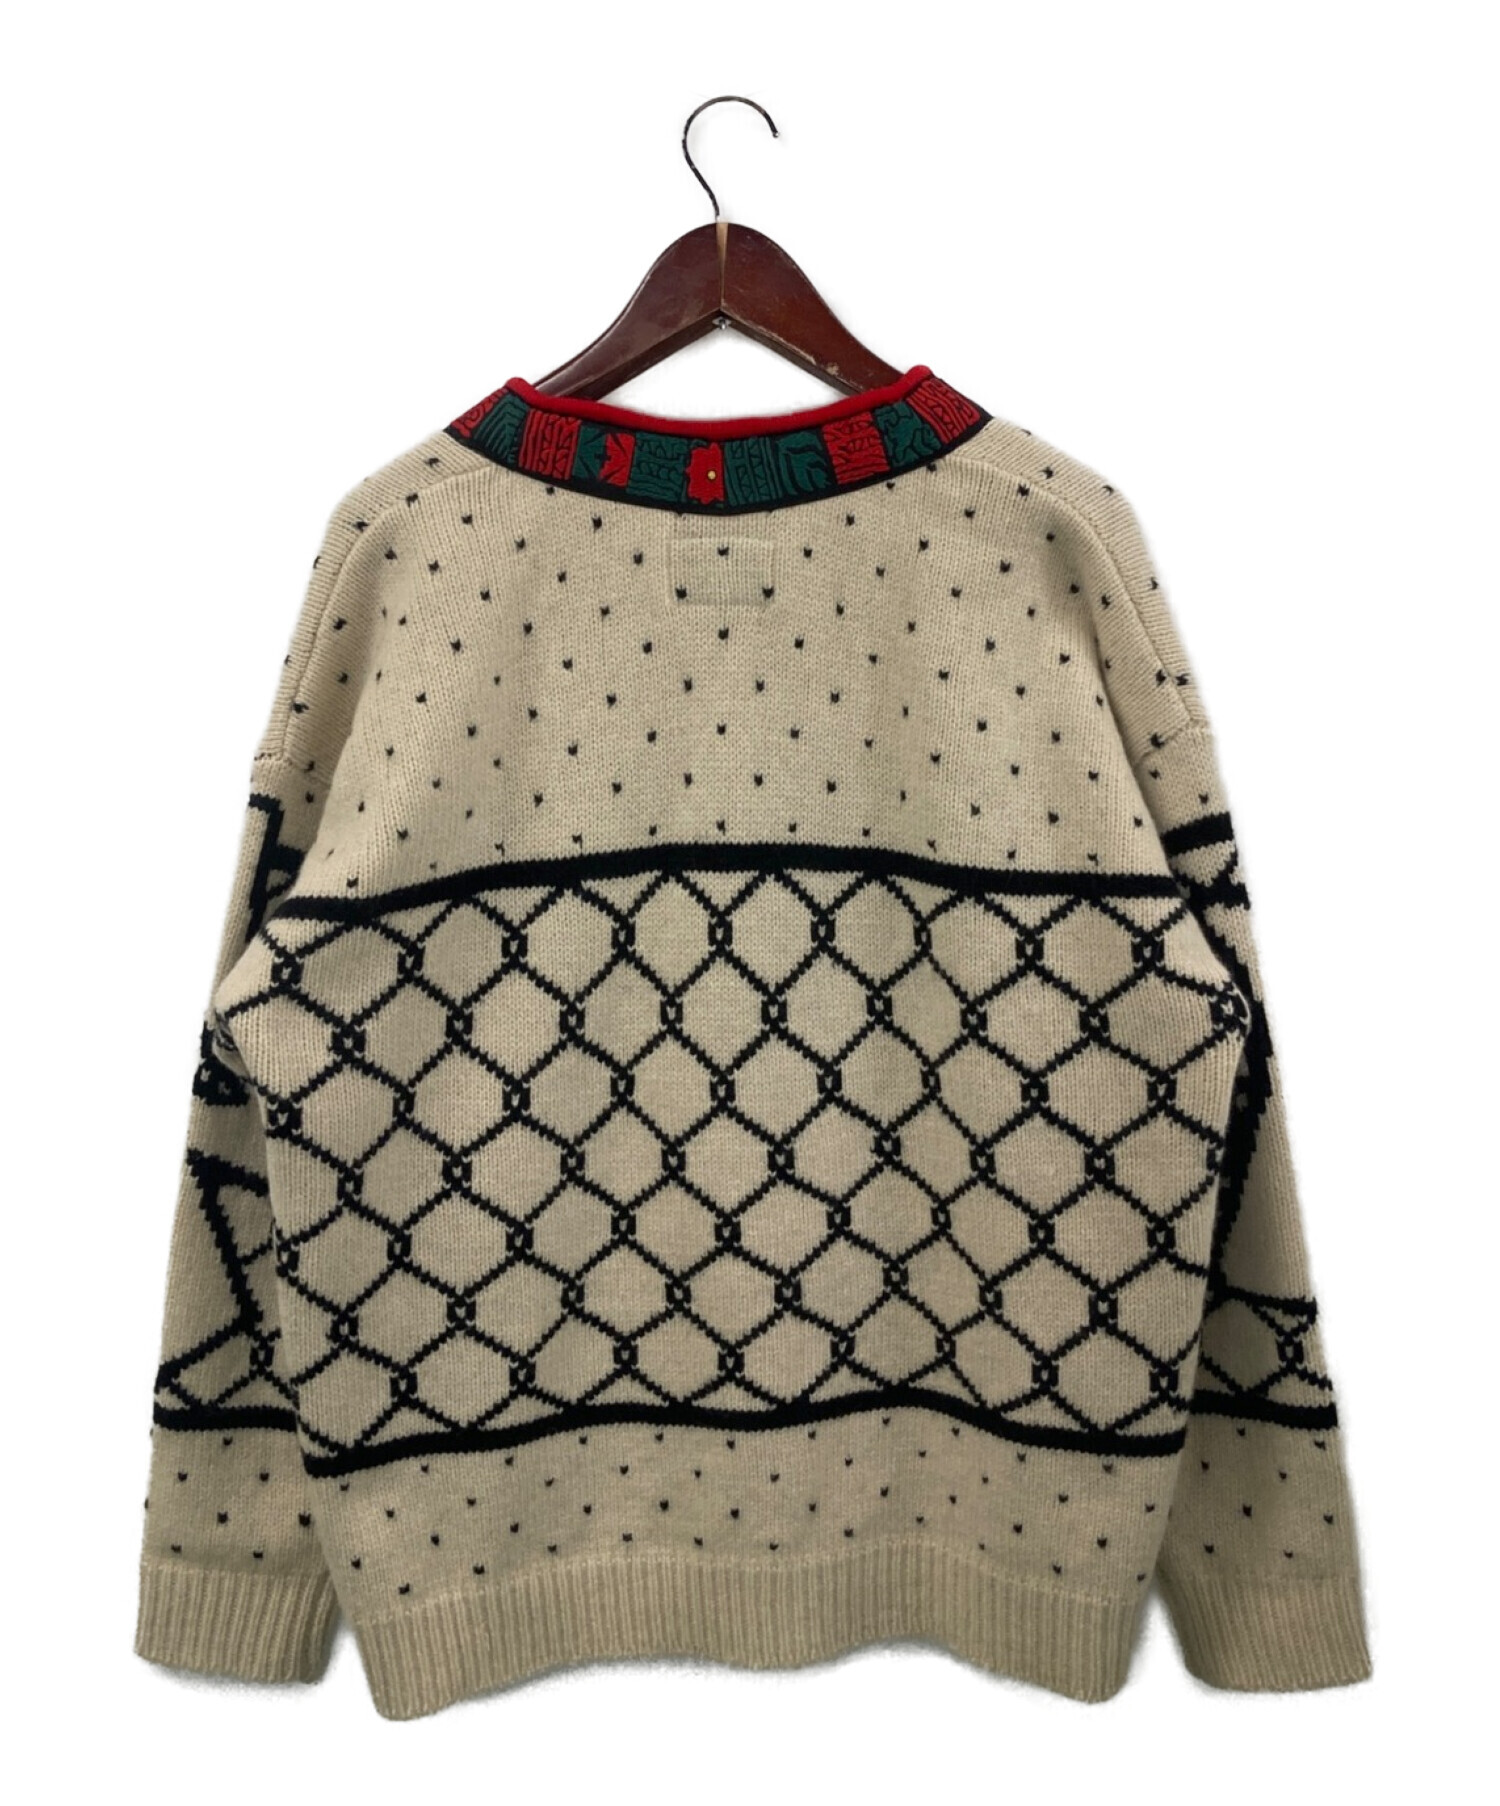 WHIMSY (ウィムジー) Tyrolean Sweater ベージュ サイズ:L